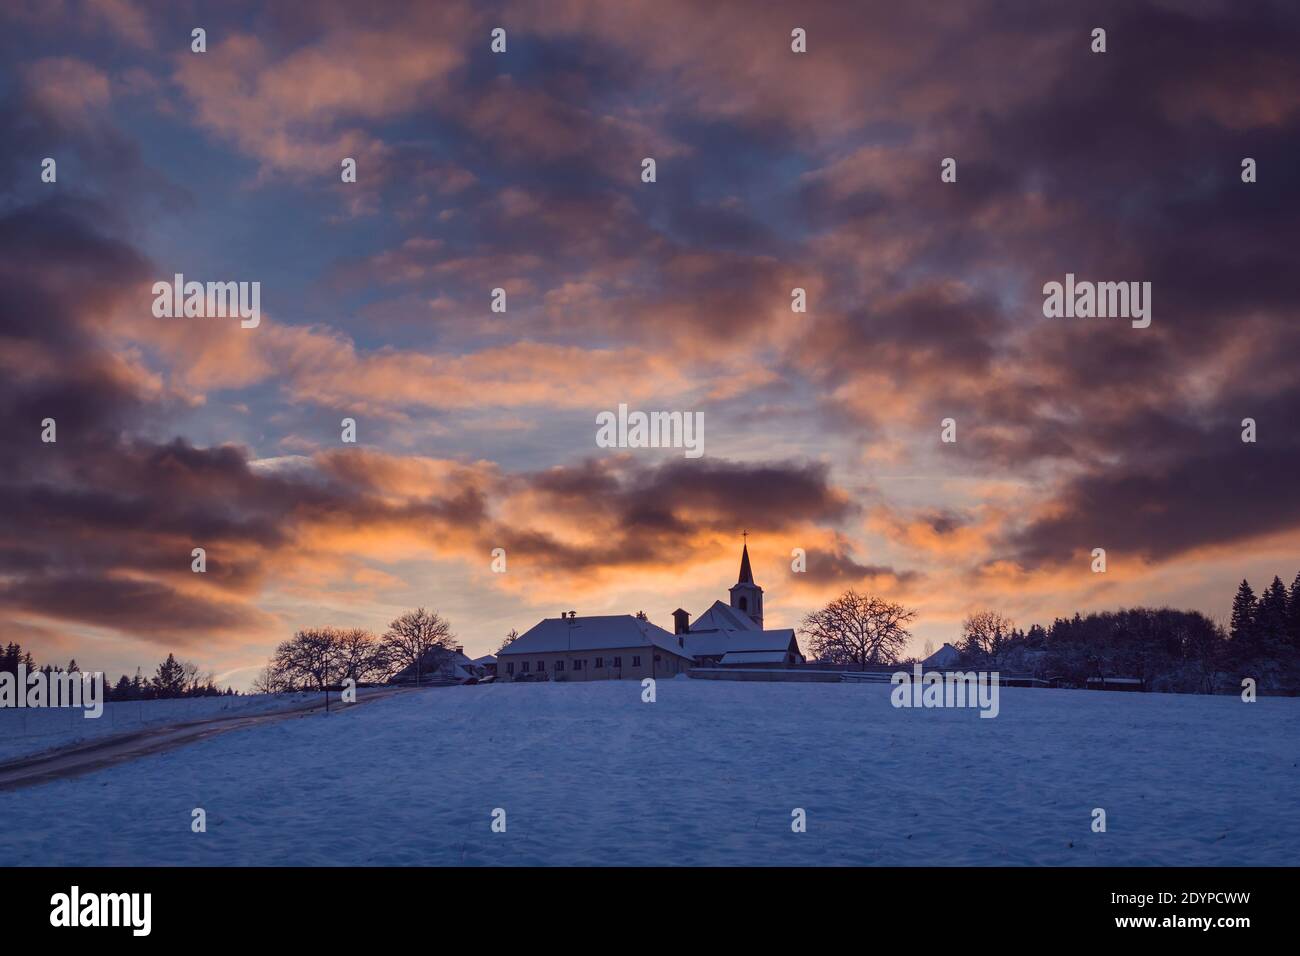 Village avec une église sur une colline au coucher du soleil en hiver, beau ciel avec des nuages illuminés, Vezovata plane, République Tchèque Banque D'Images